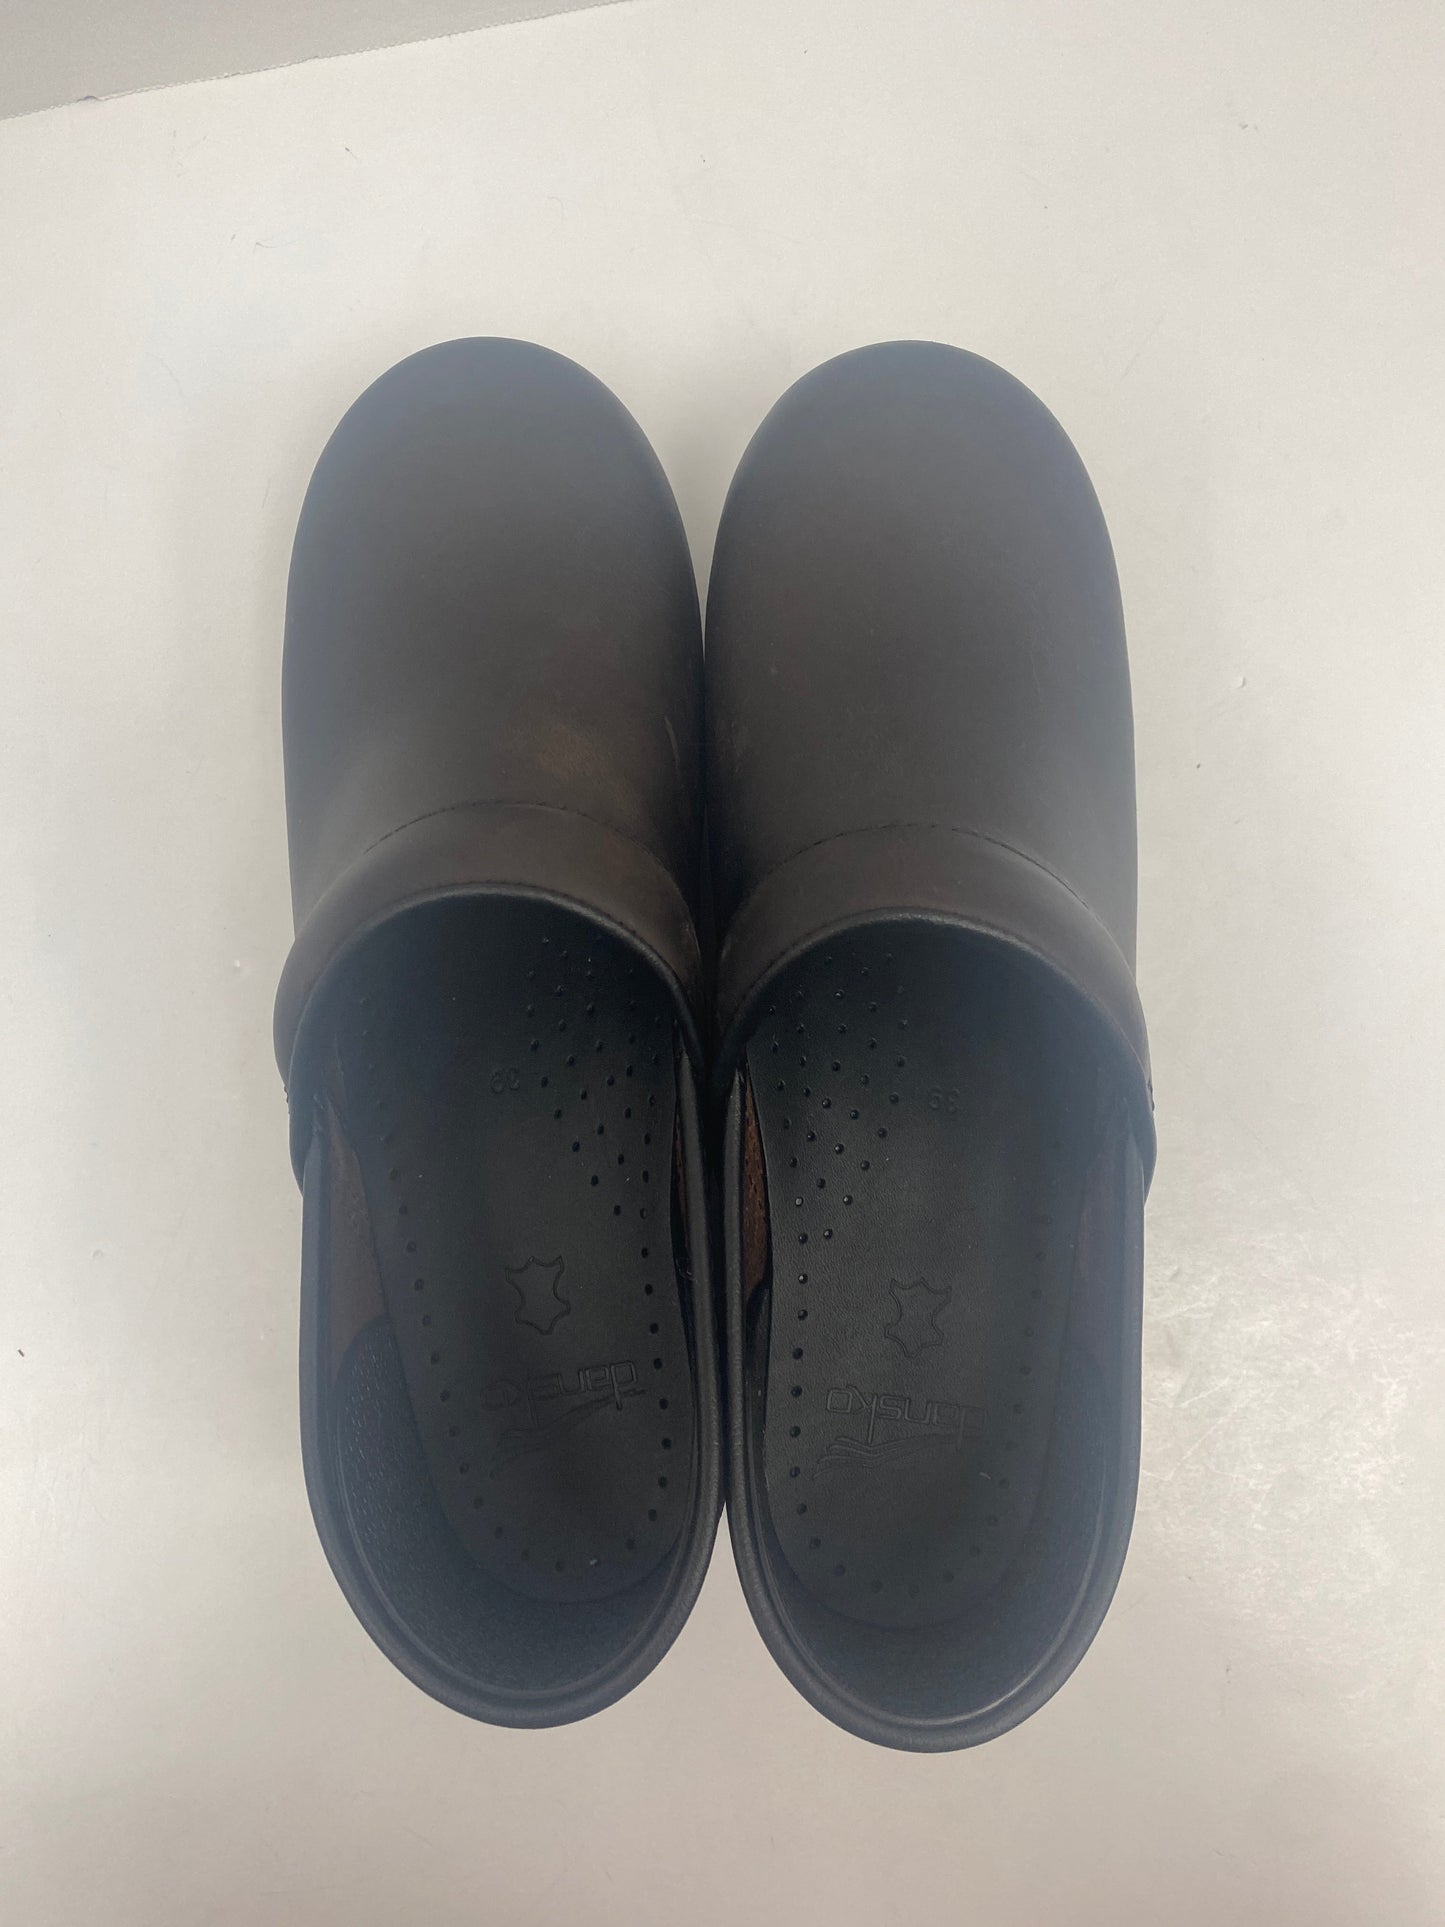 Shoes Flats Mule & Slide By Dansko  Size: 8.5